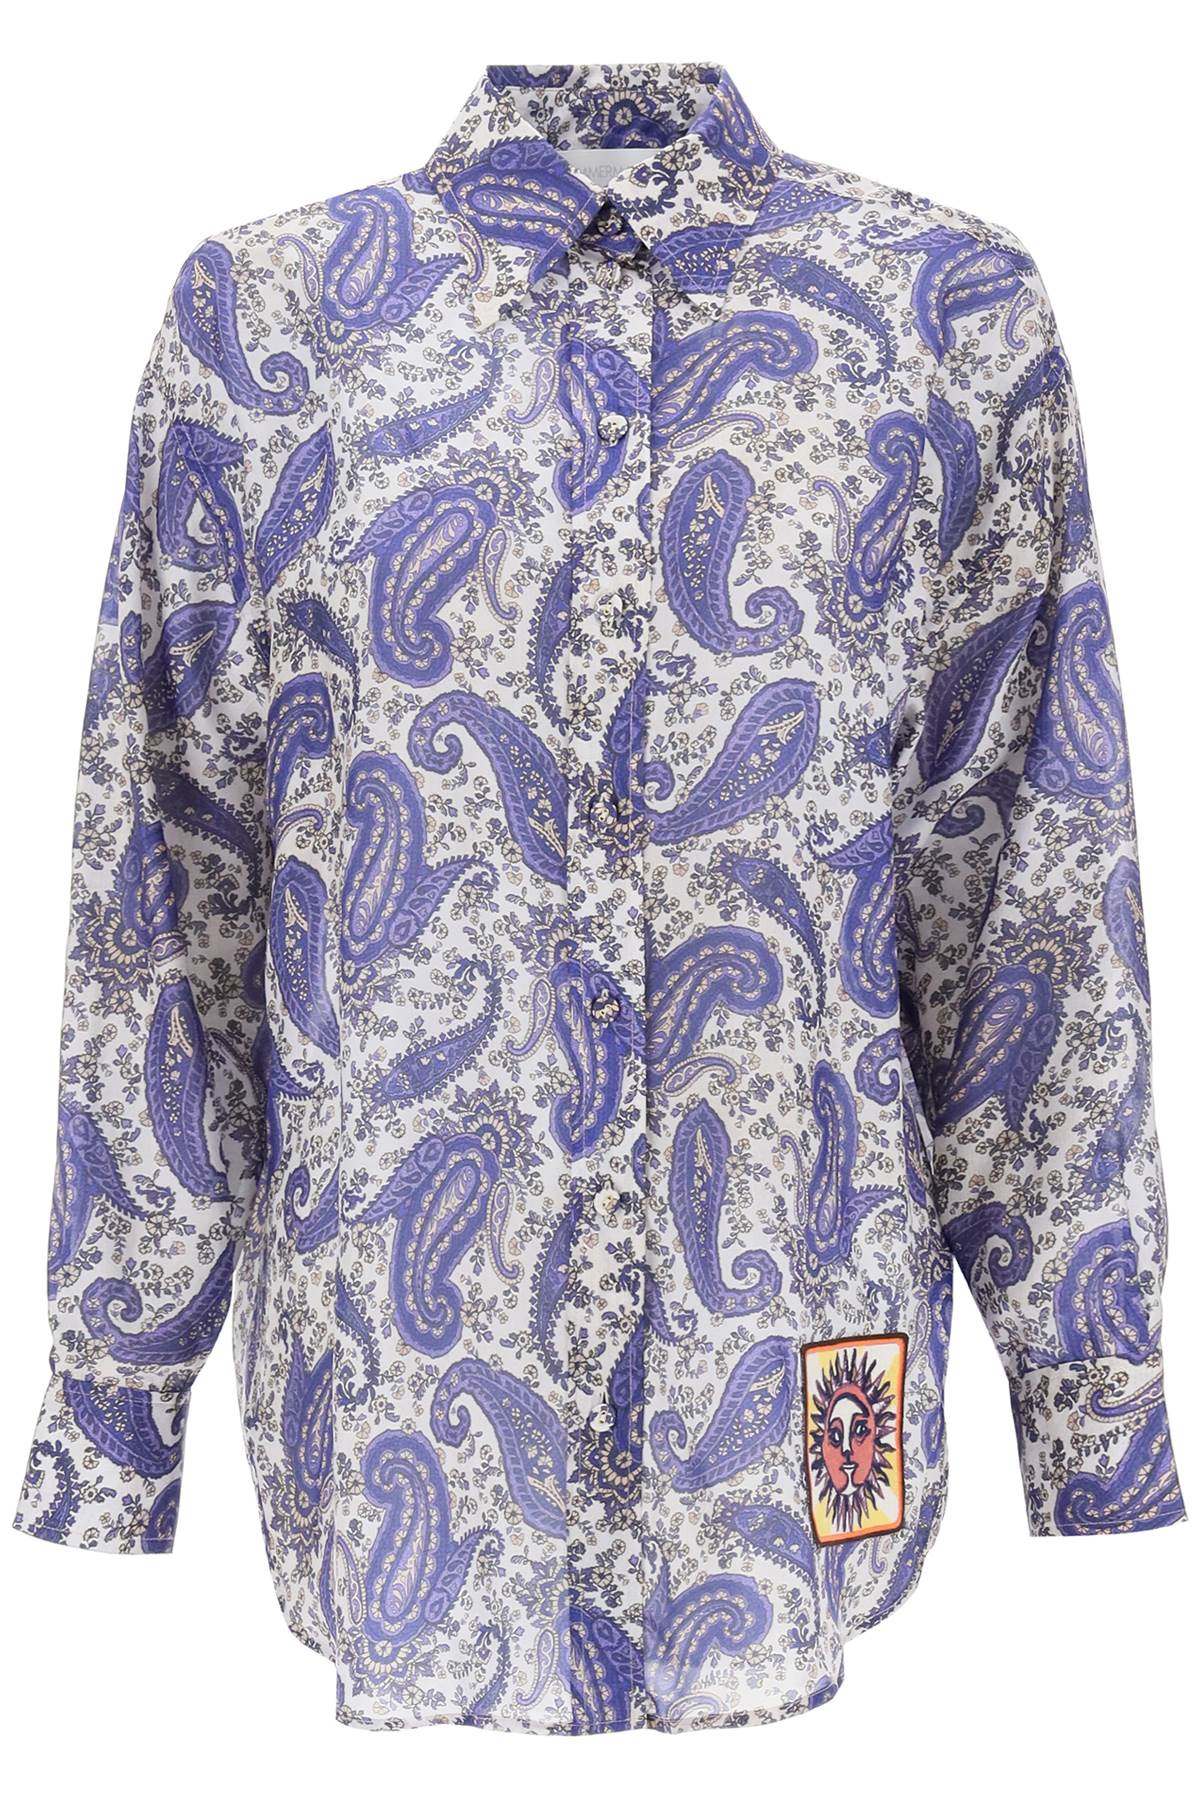 マルチカラー・ペイズリープリントシルクシャツ（レディース）- FW23コレクション